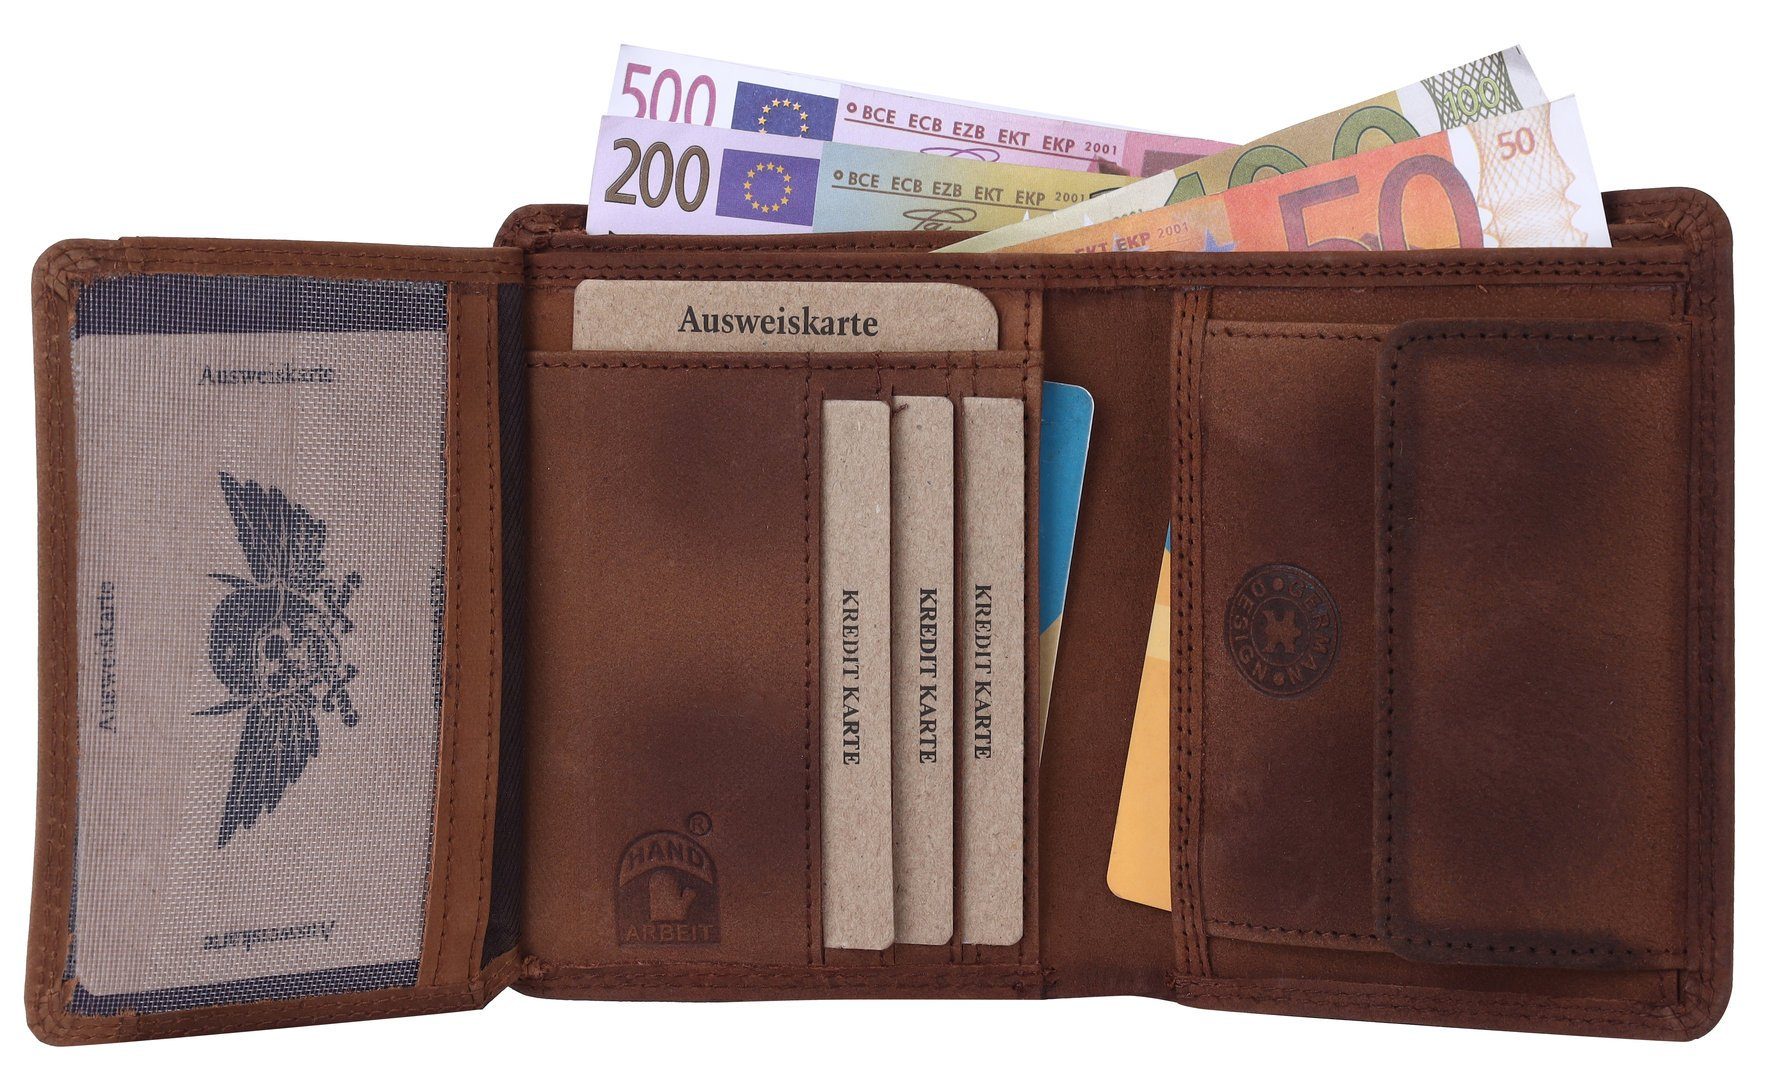 Kette RFID Lederbörse Schutz mit Leder Portemonnaie, Brieftasche Geldbörse Münzfach Herren Börse mit Büffelleder Männerbörse SHG